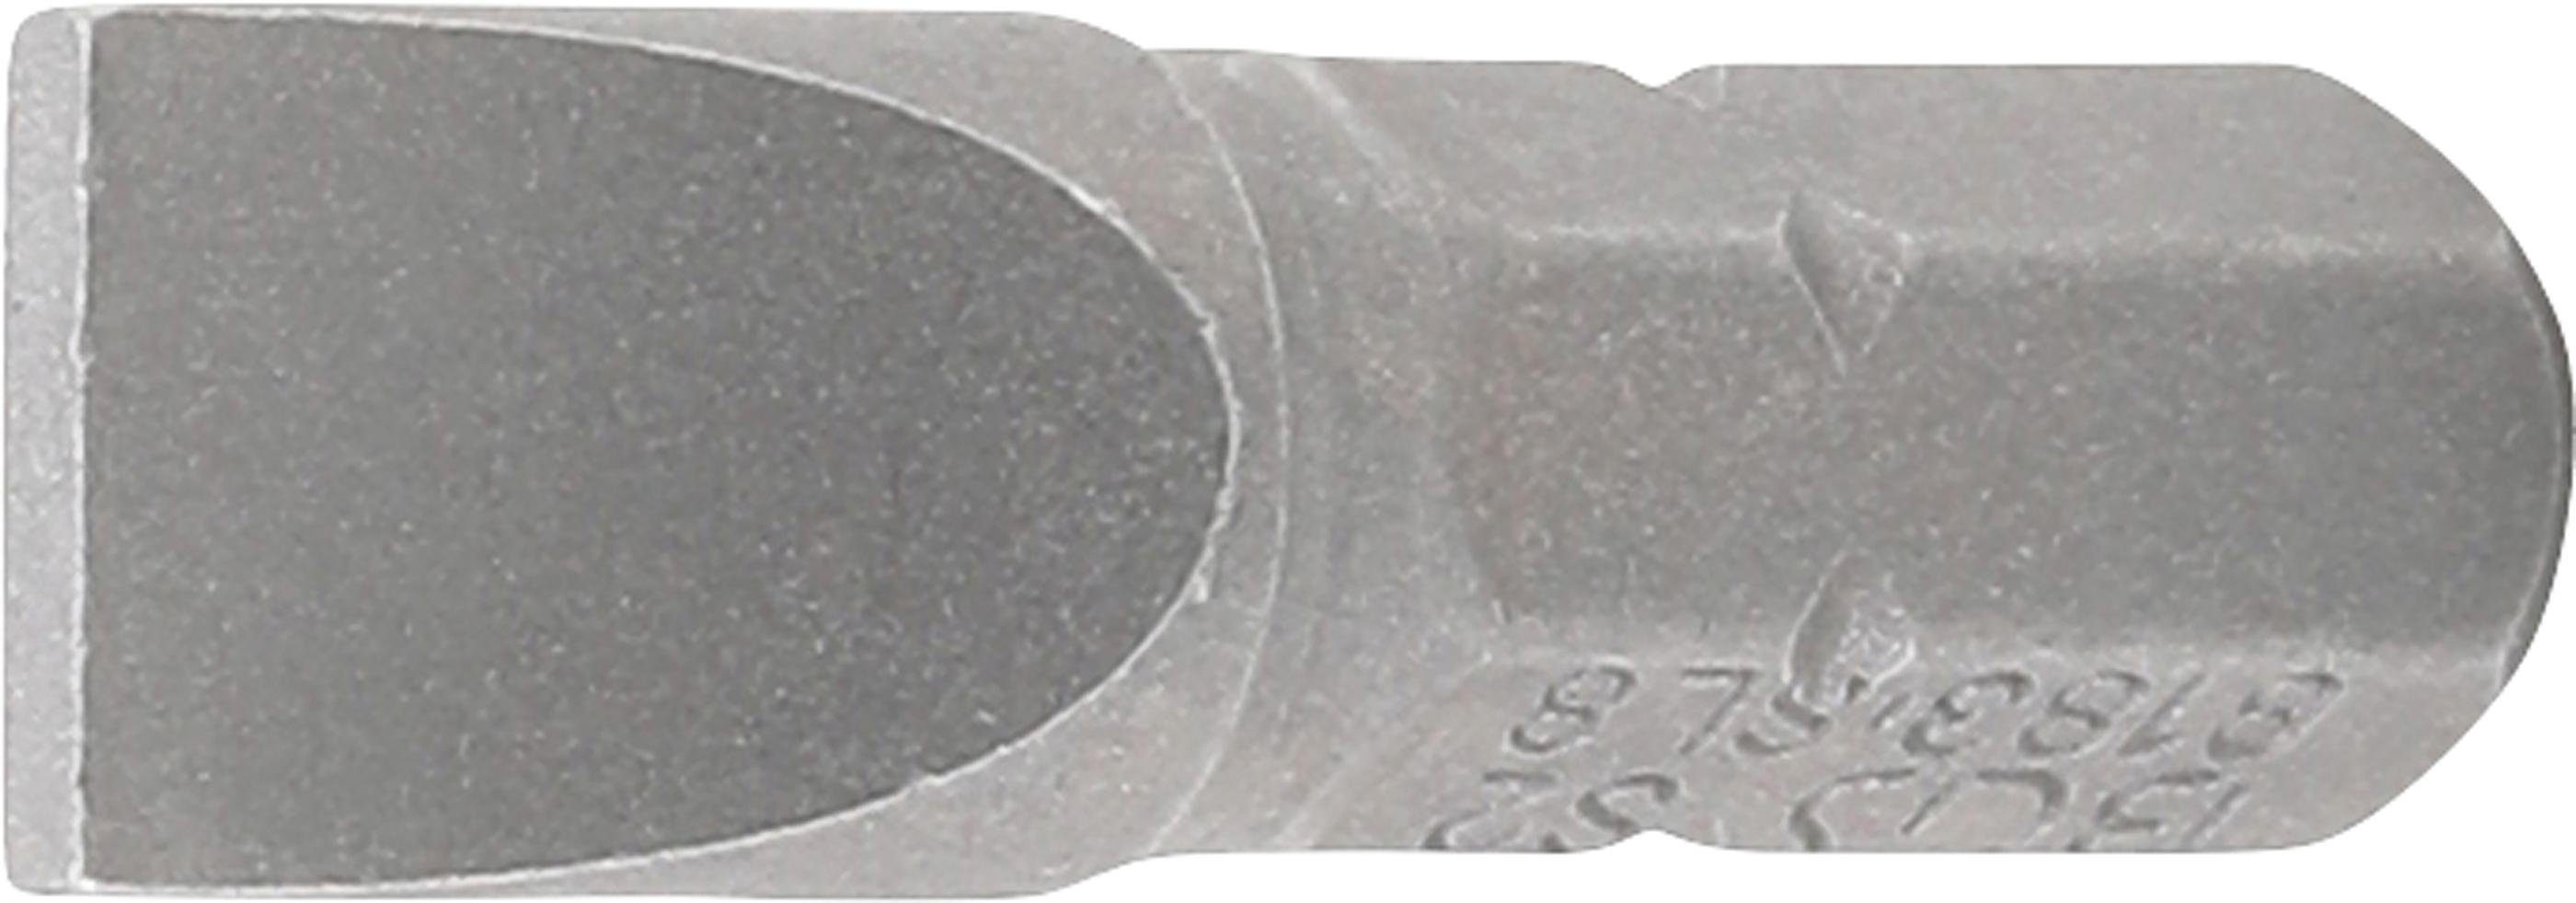 BGS technic Bit-Schraubendreher 8 6,3 mm Außensechskant Schlitz mm Bit, Antrieb (1/4)